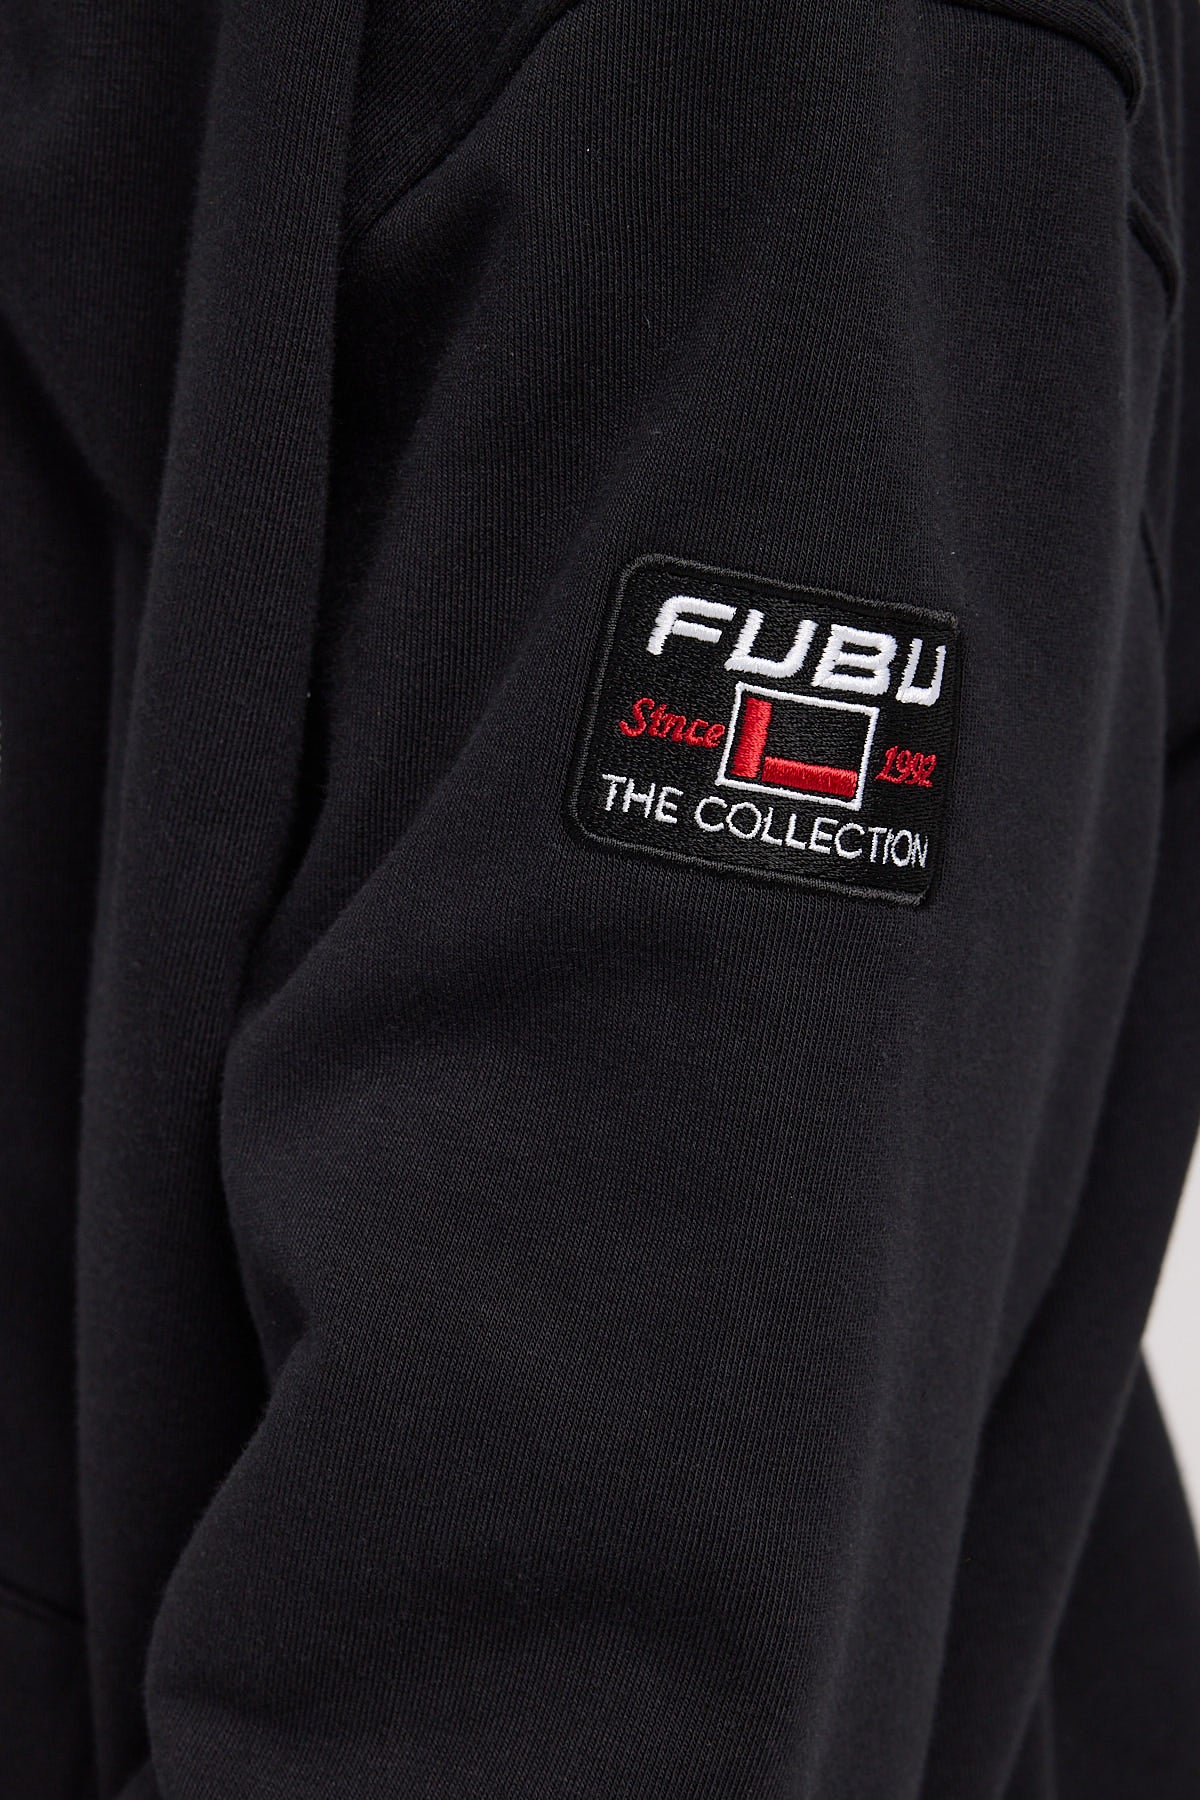 Fubu Classic Hooded Sweats Black